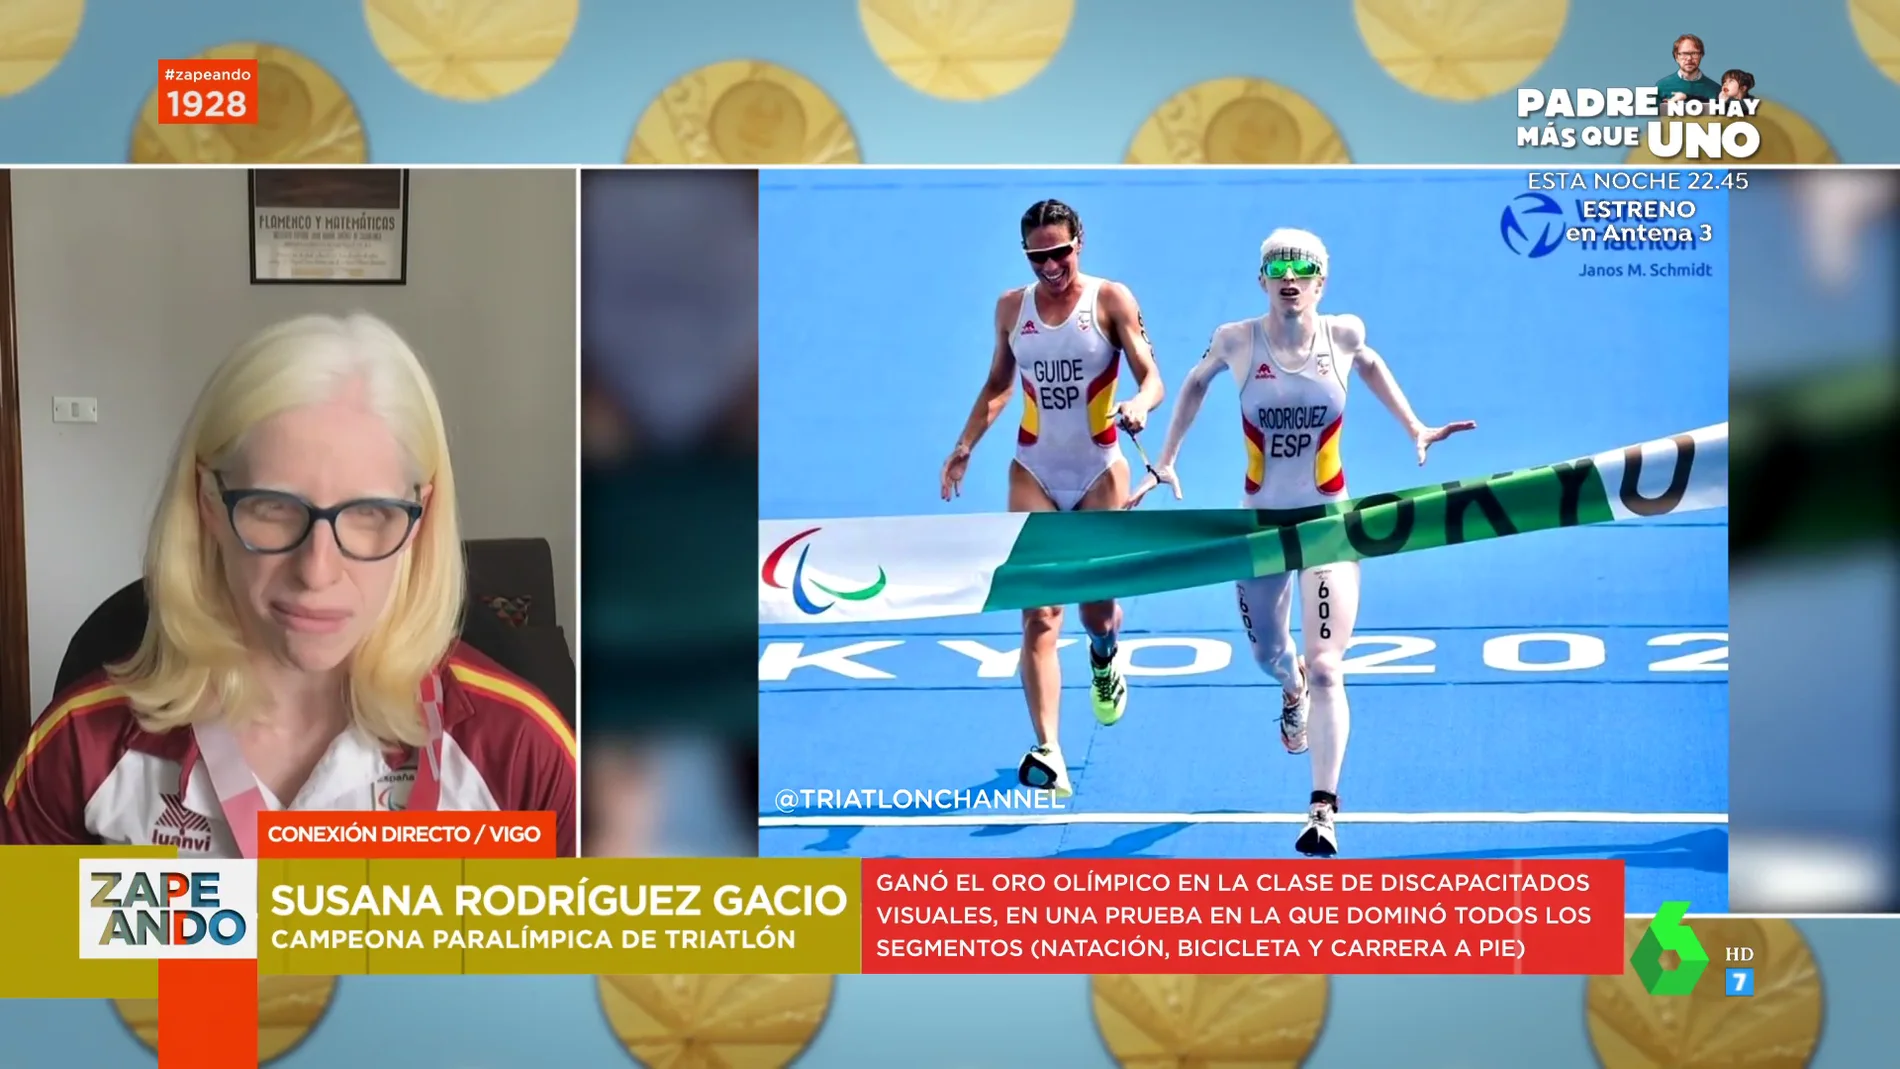 Susana Rodríguez, tras arrasar en Tokio y conseguir el oro en triatlón: "El 99% se debe al trabajo"